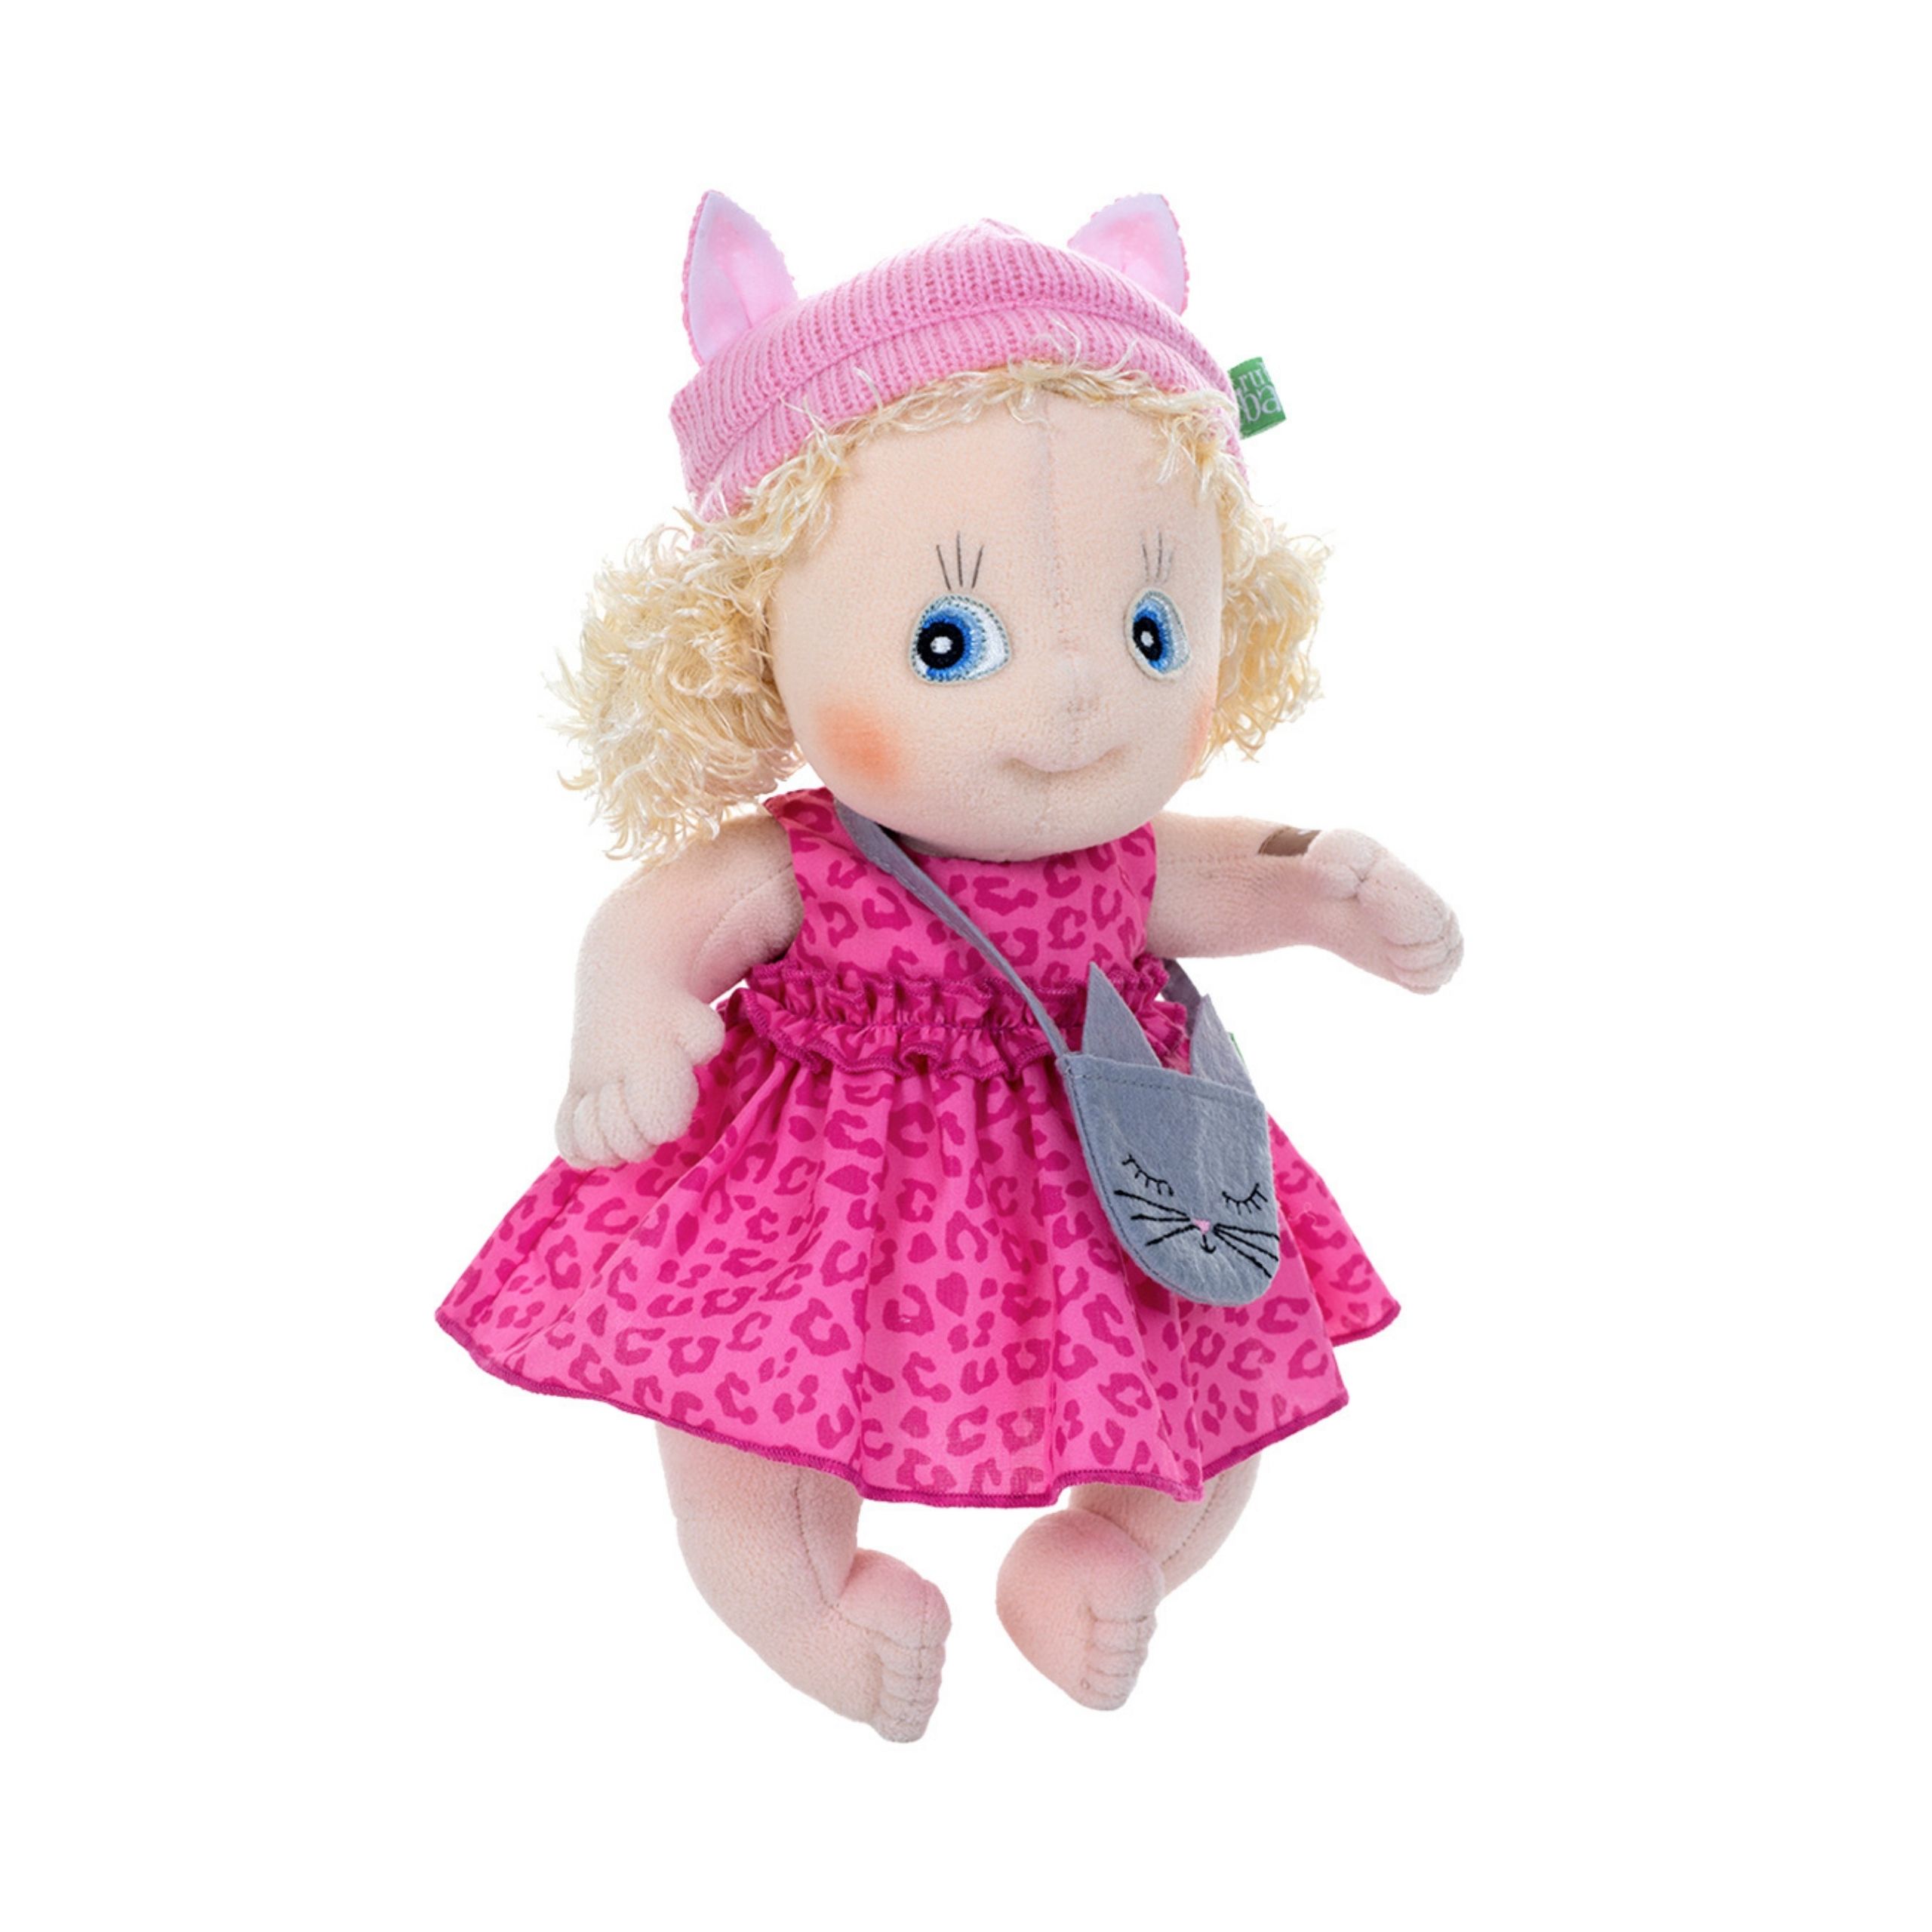 Soft dolls rubens barn soft doll emelie cutie activity